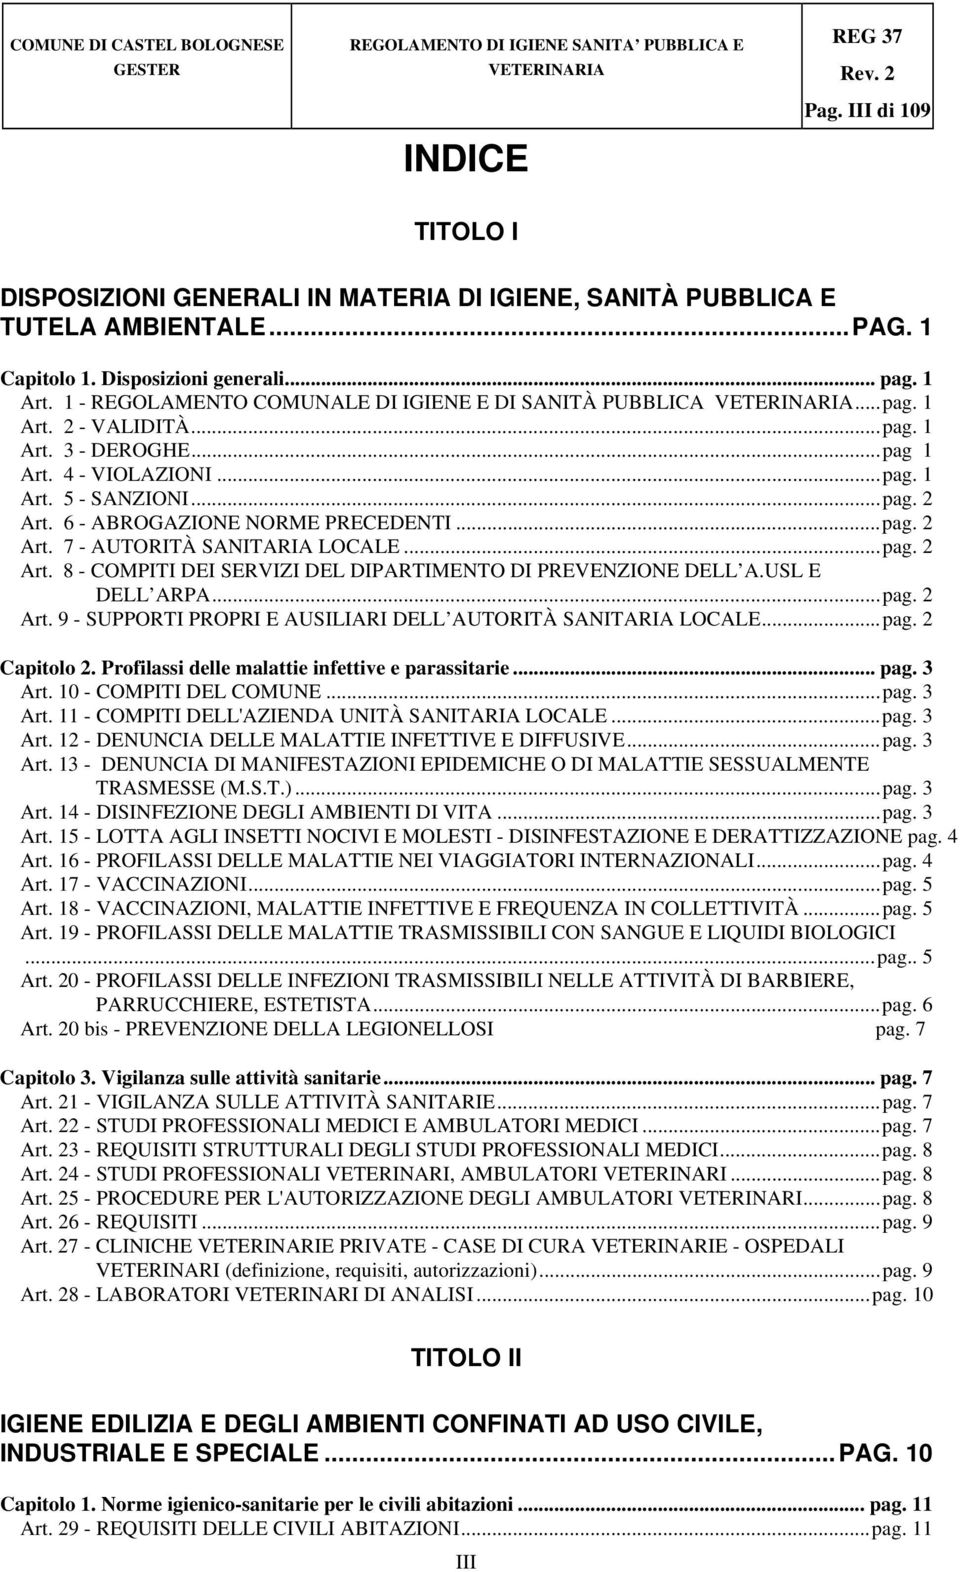 6 - ABROGAZIONE NORME PRECEDENTI...pag. 2 Art. 7 - AUTORITÀ SANITARIA LOCALE...pag. 2 Art. 8 - COMPITI DEI SERVIZI DEL DIPARTIMENTO DI PREVENZIONE DELL A.USL E DELL ARPA...pag. 2 Art. 9 - SUPPORTI PROPRI E AUSILIARI DELL AUTORITÀ SANITARIA LOCALE.